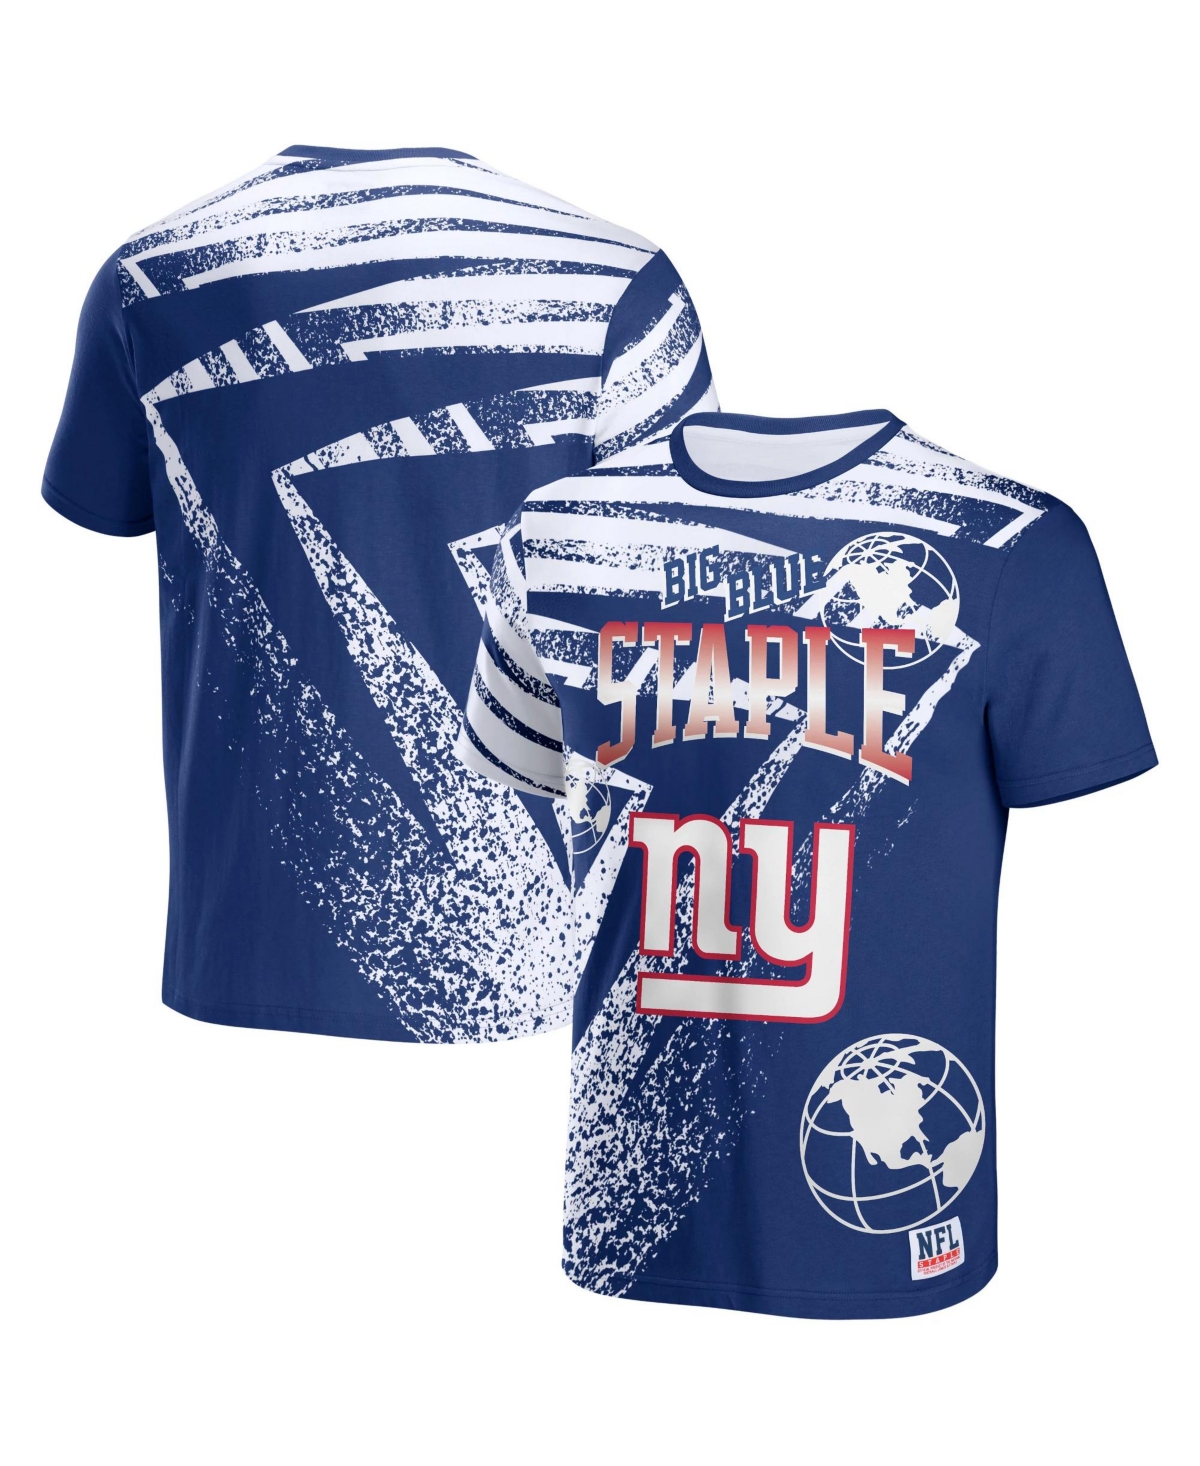 Men's Nfl X Staple Blue New York Giants Team Slogan All Over Print Short Sleeve T-shirt - Blue